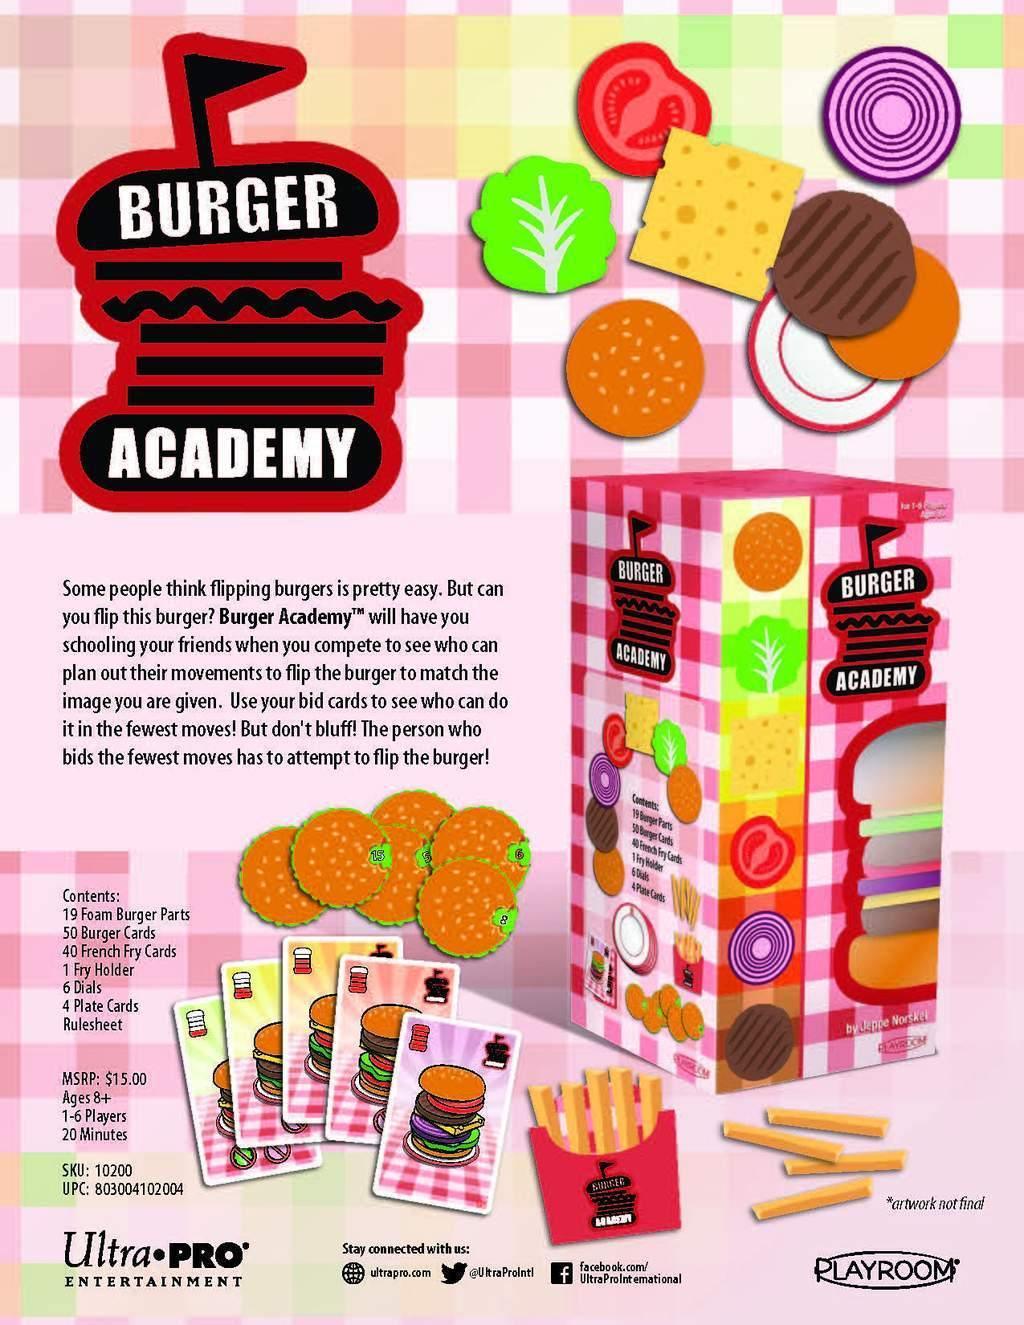 Burger Academy - Gaming Library